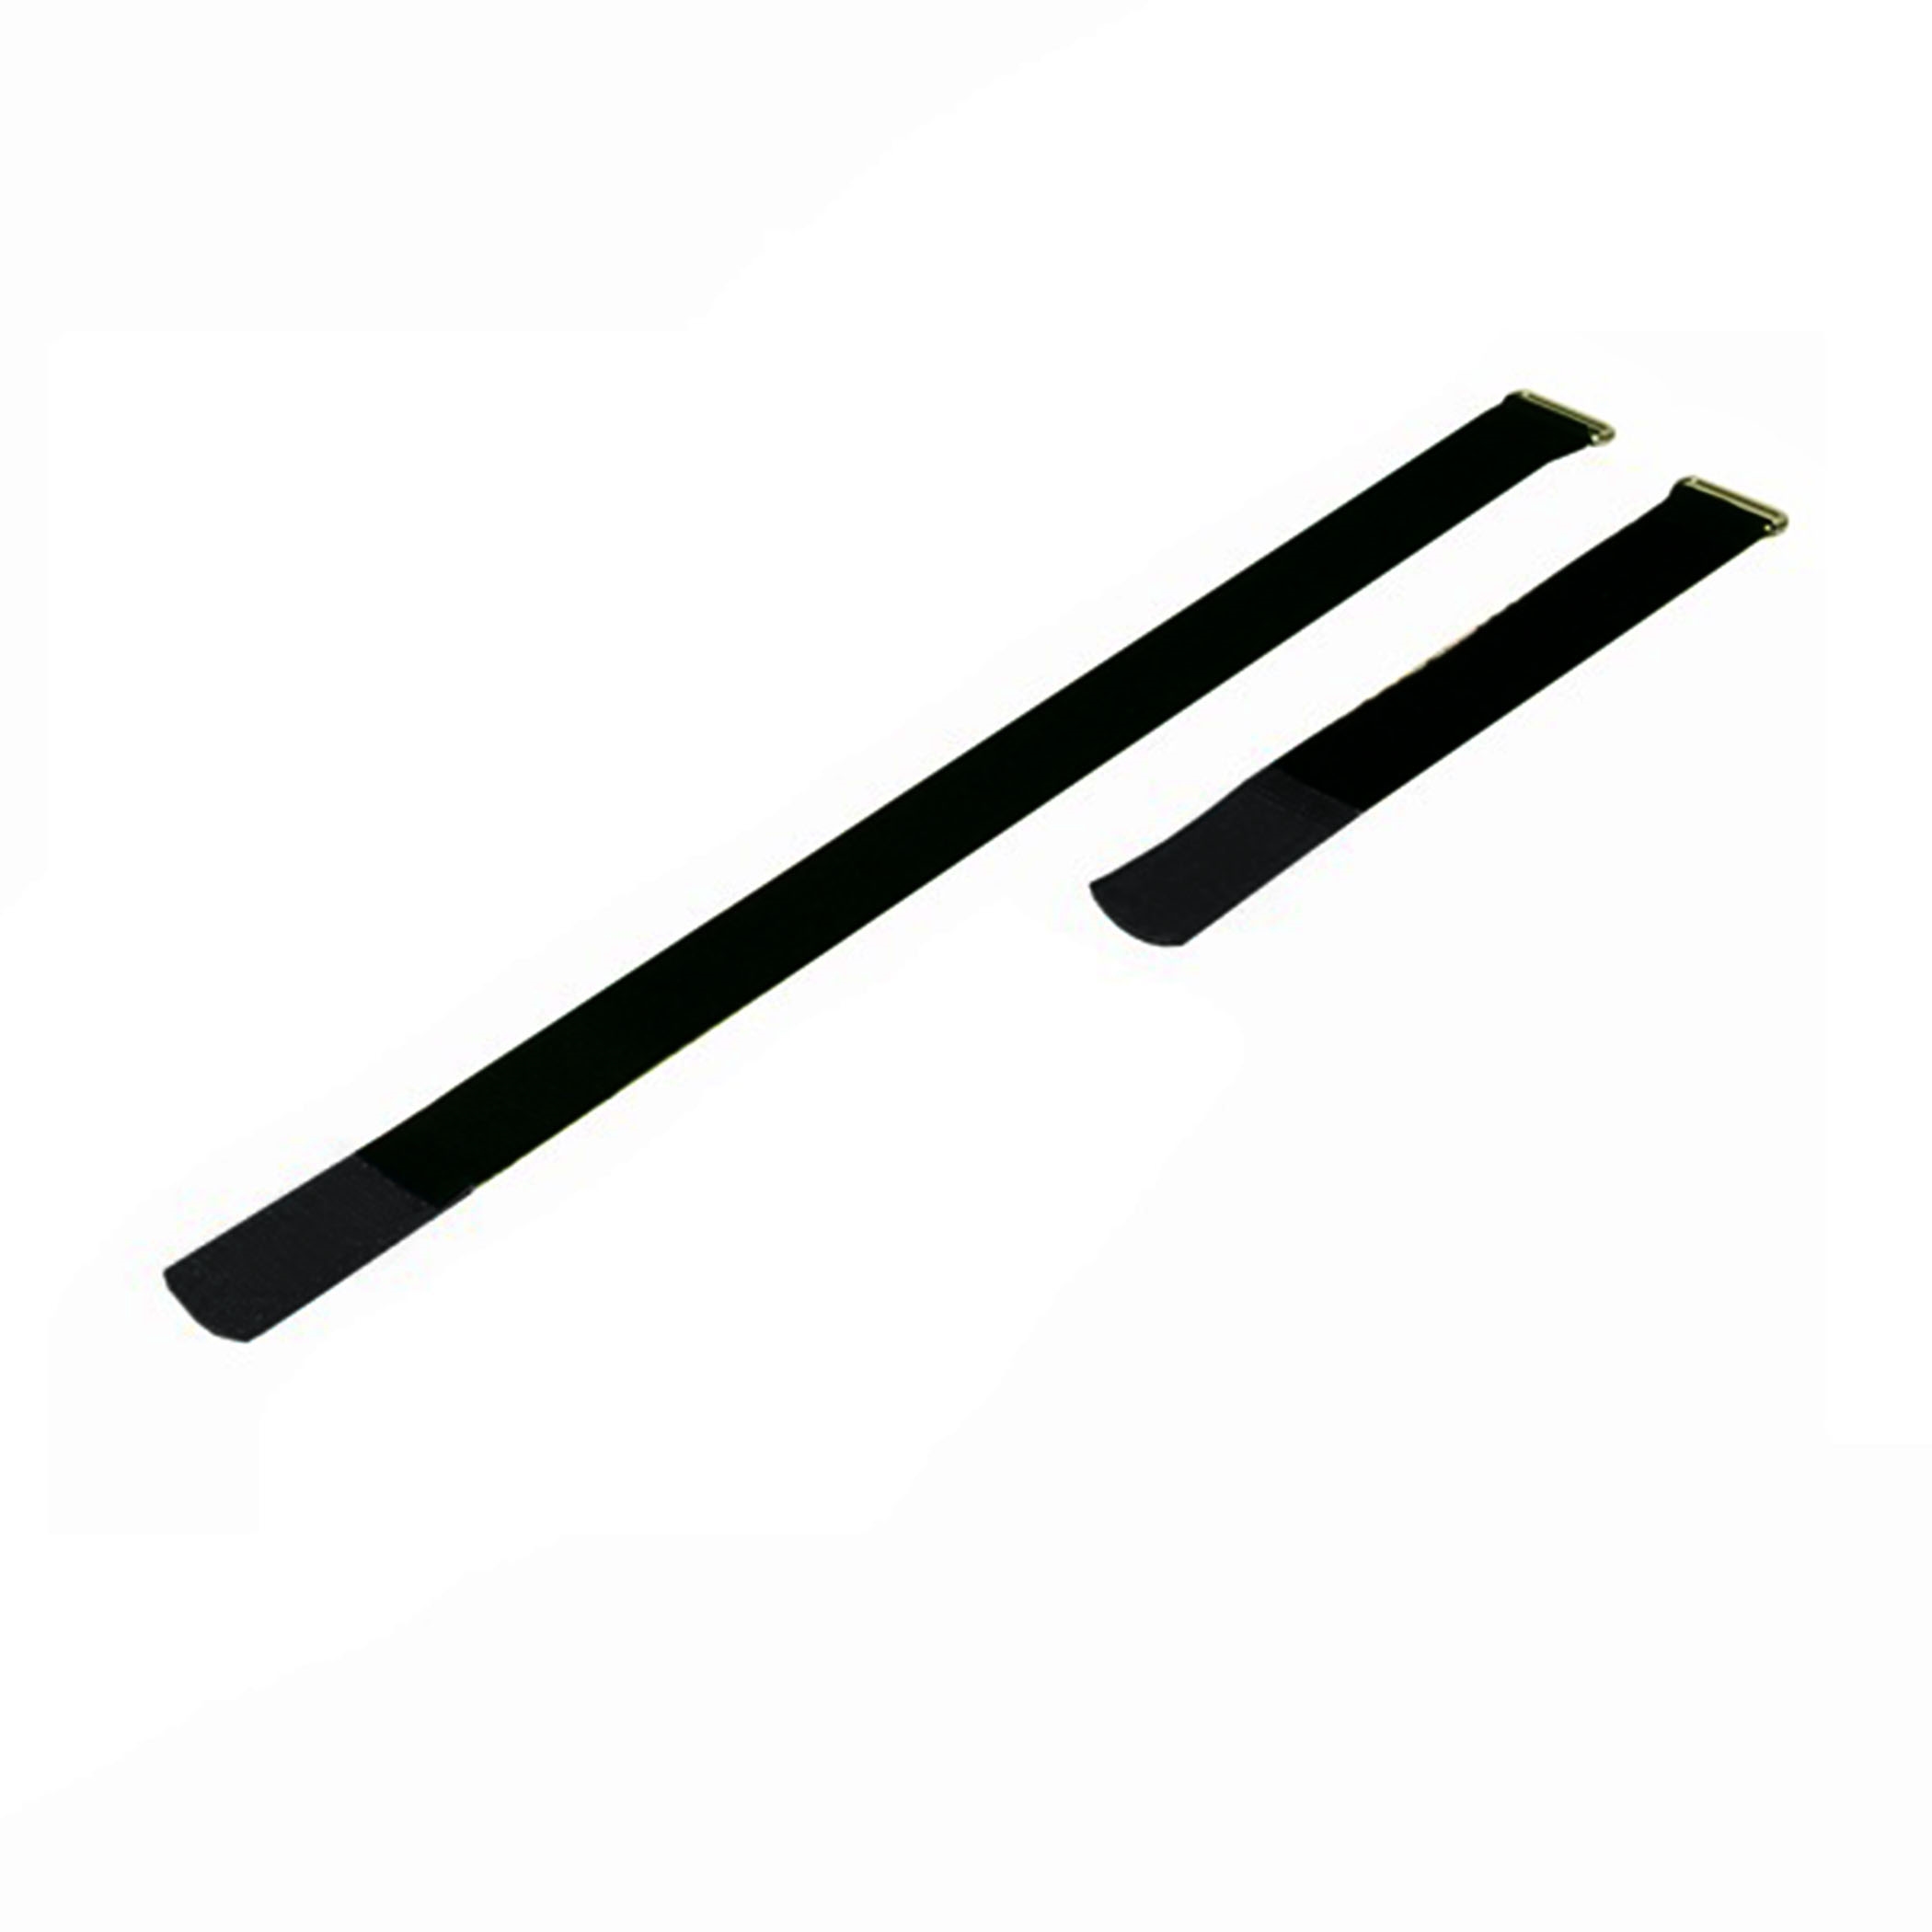 Kabelbinder 220x25mm met haaktip zwart, (10 stuks) - a2522-500h